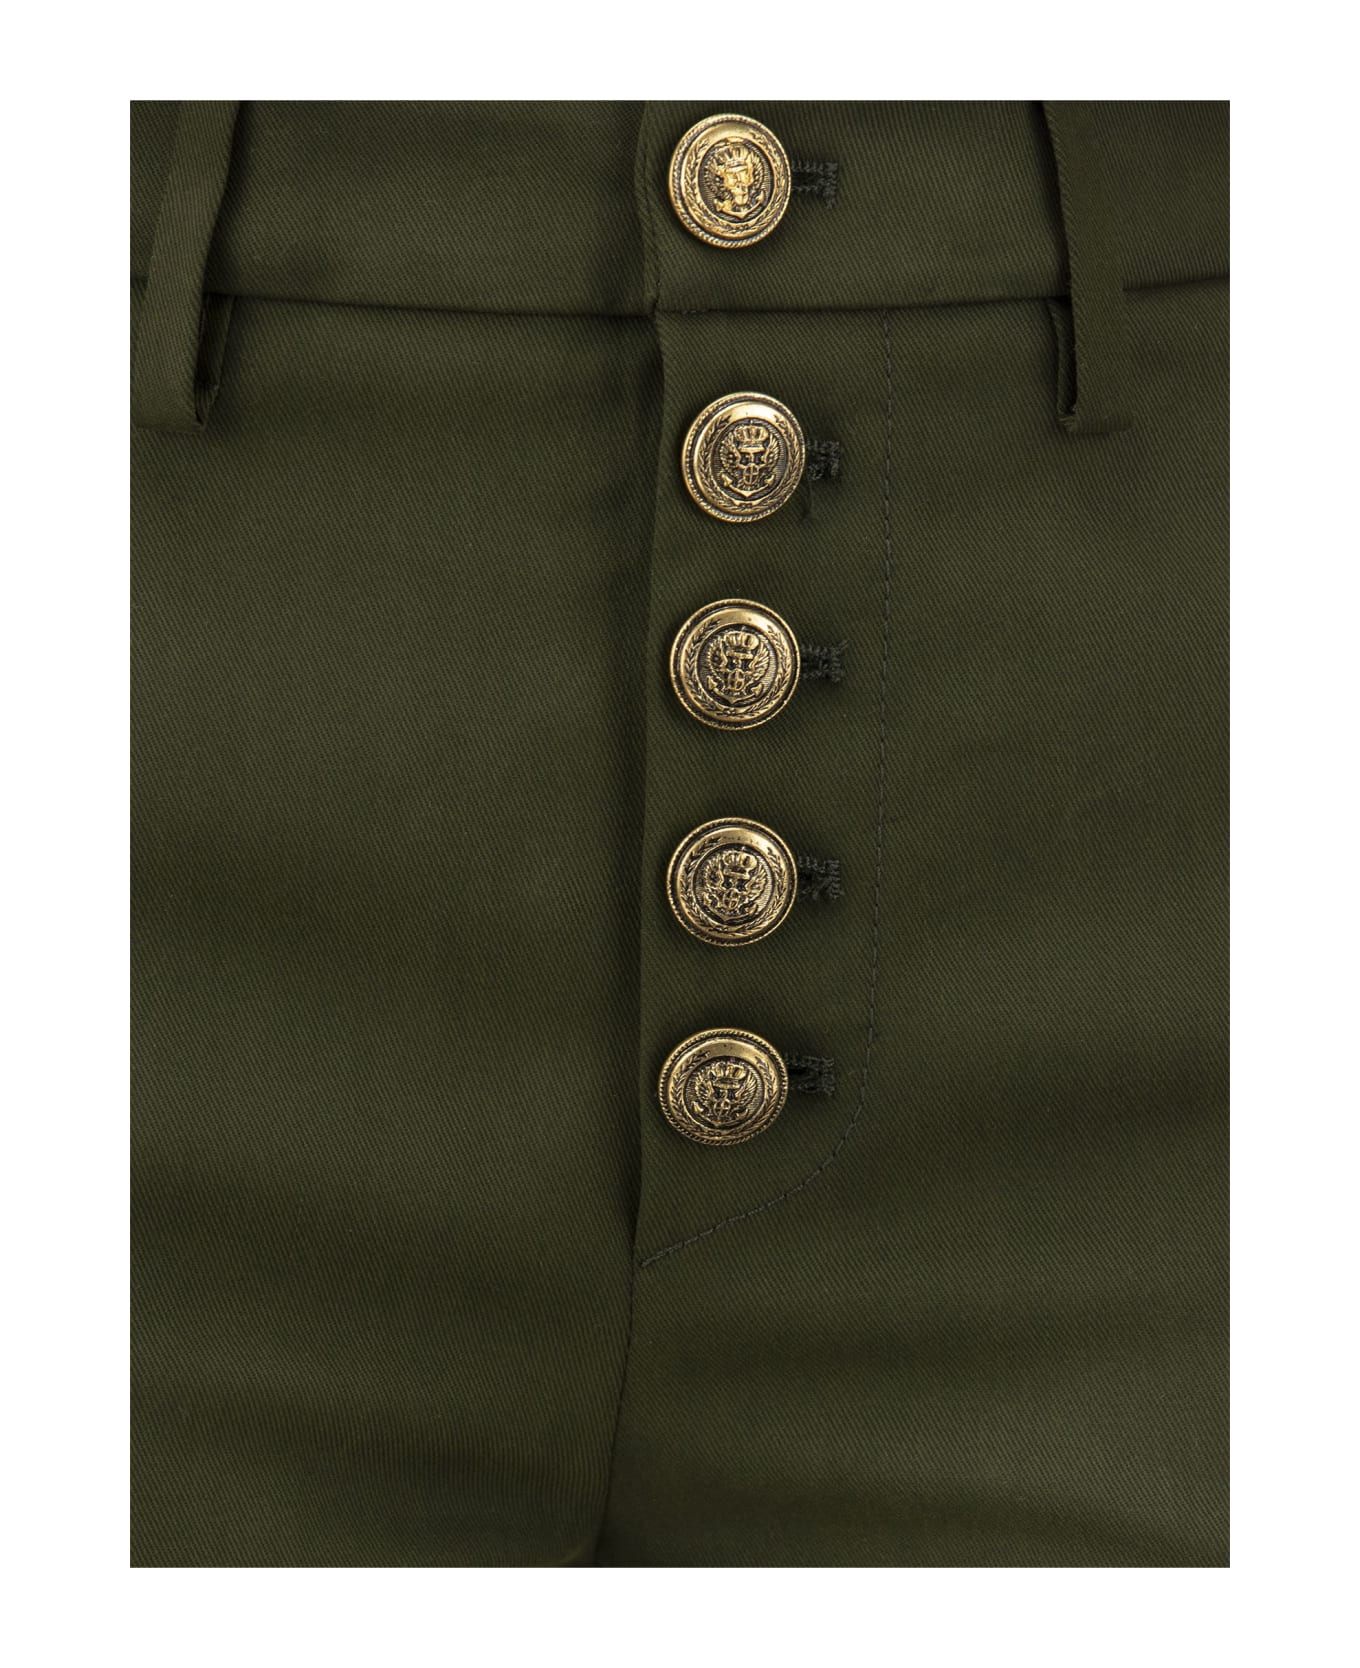 Dondup Carmen - Slim Gabardine Lyocell Trousers - Military Green